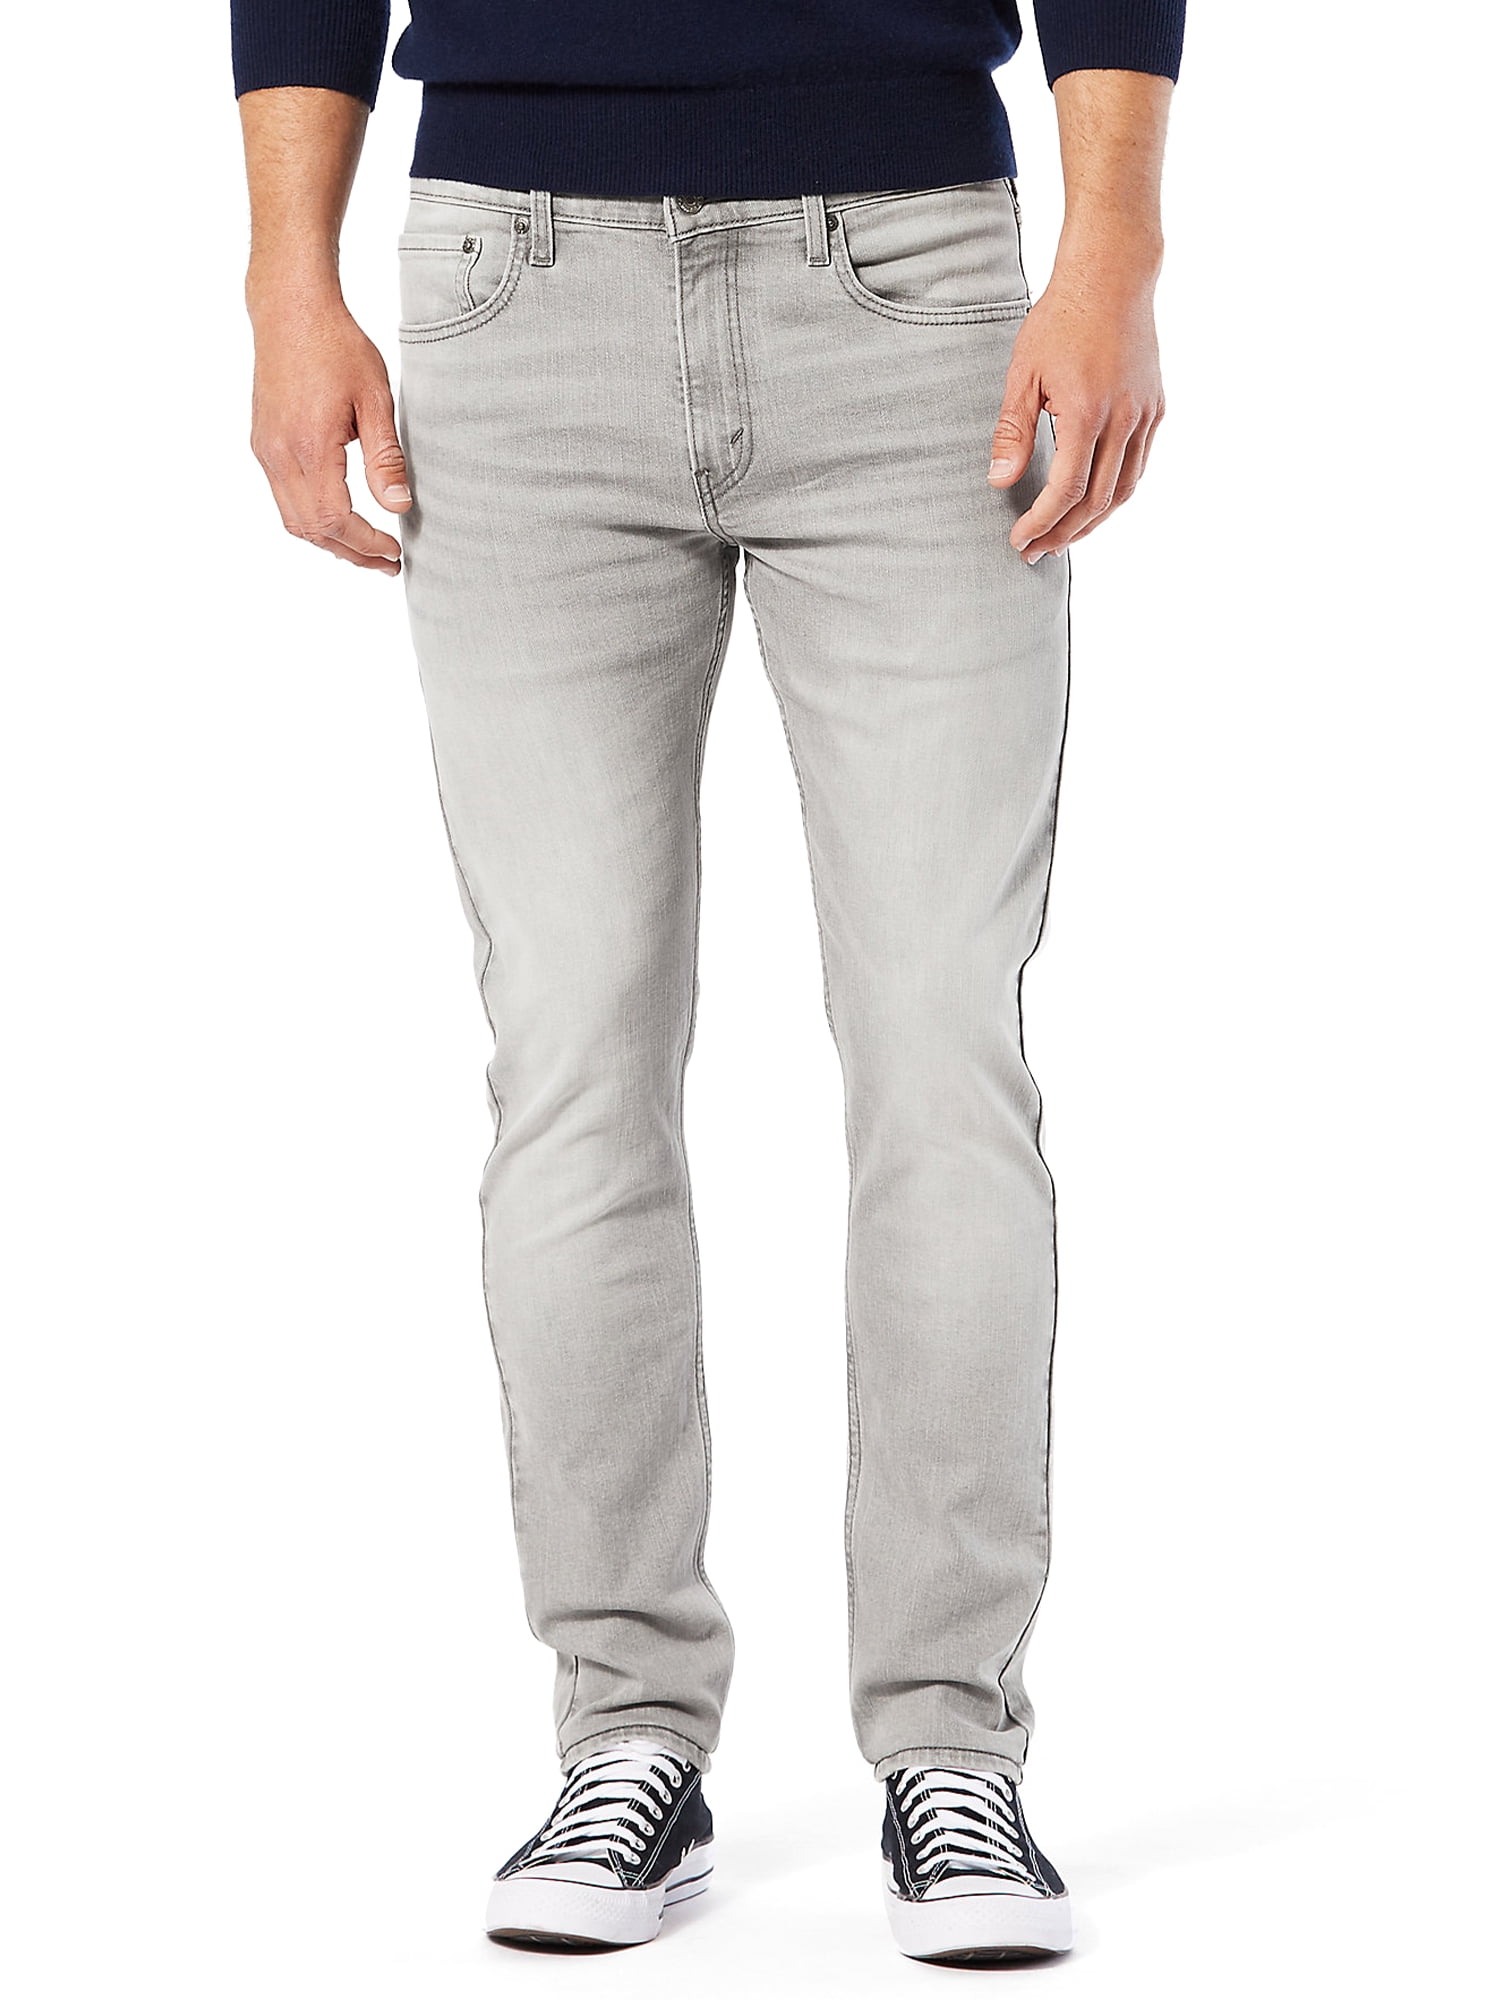 aanbidden Gepensioneerd Wet en regelgeving Signature by Levi Strauss & Co. Men's Slim Fit Taper Jeans - Walmart.com